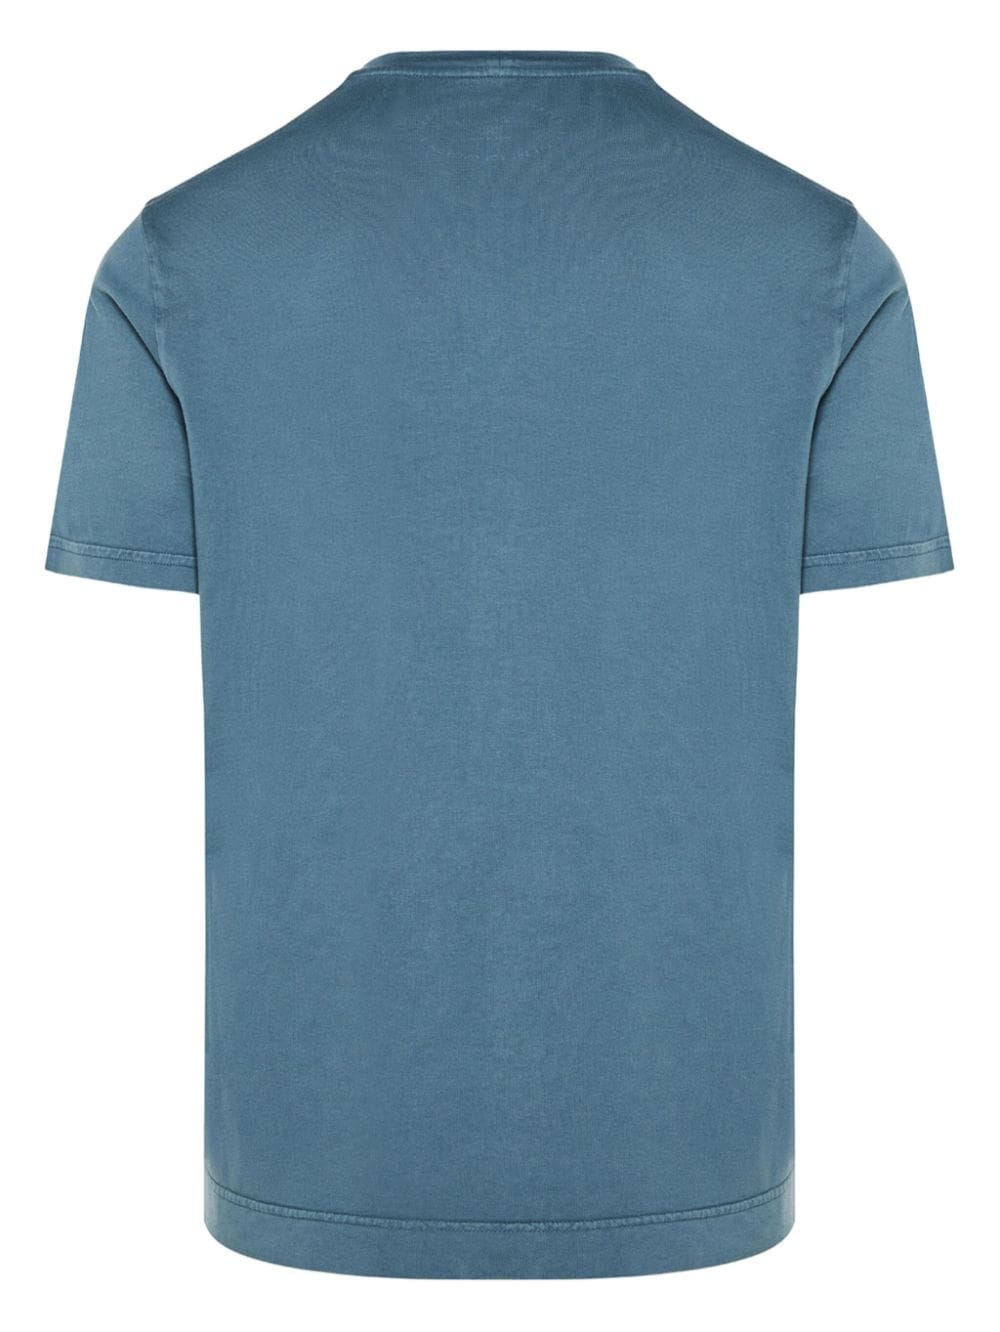 Fedeli Extreme cotton T-shirt - Blauw